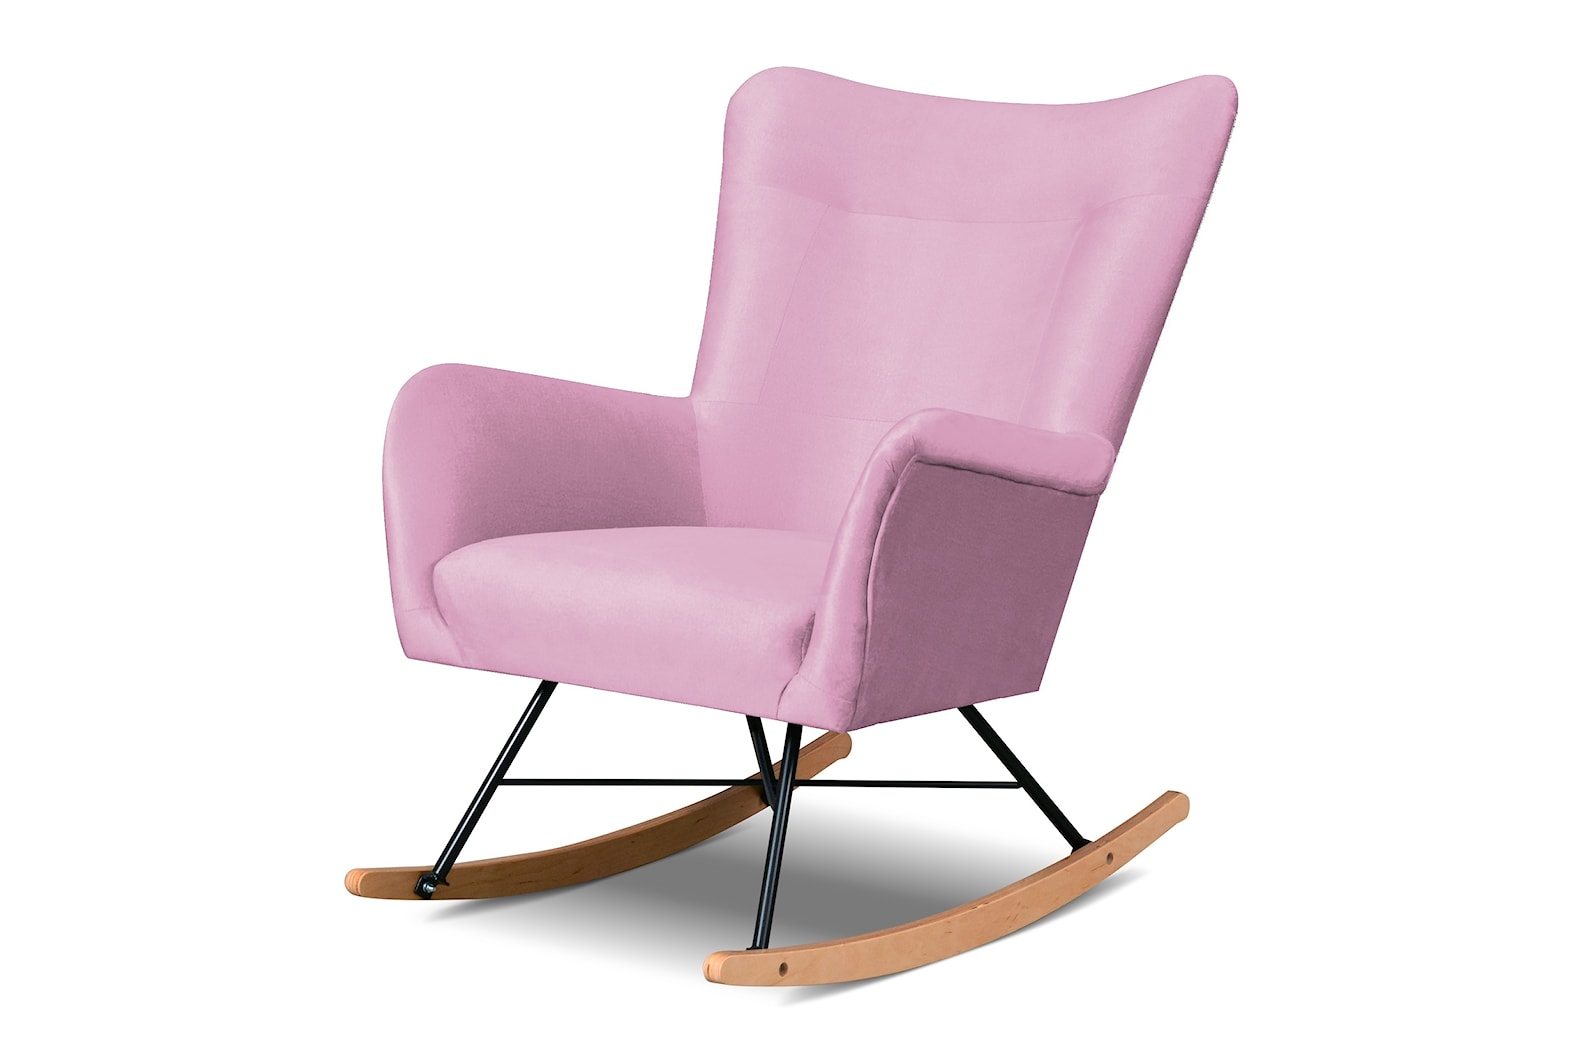 Bujak różowy fotel do karmienia - fotel Olo nogi bujane - zdjęcie od zpuh.meblomar - Homebook